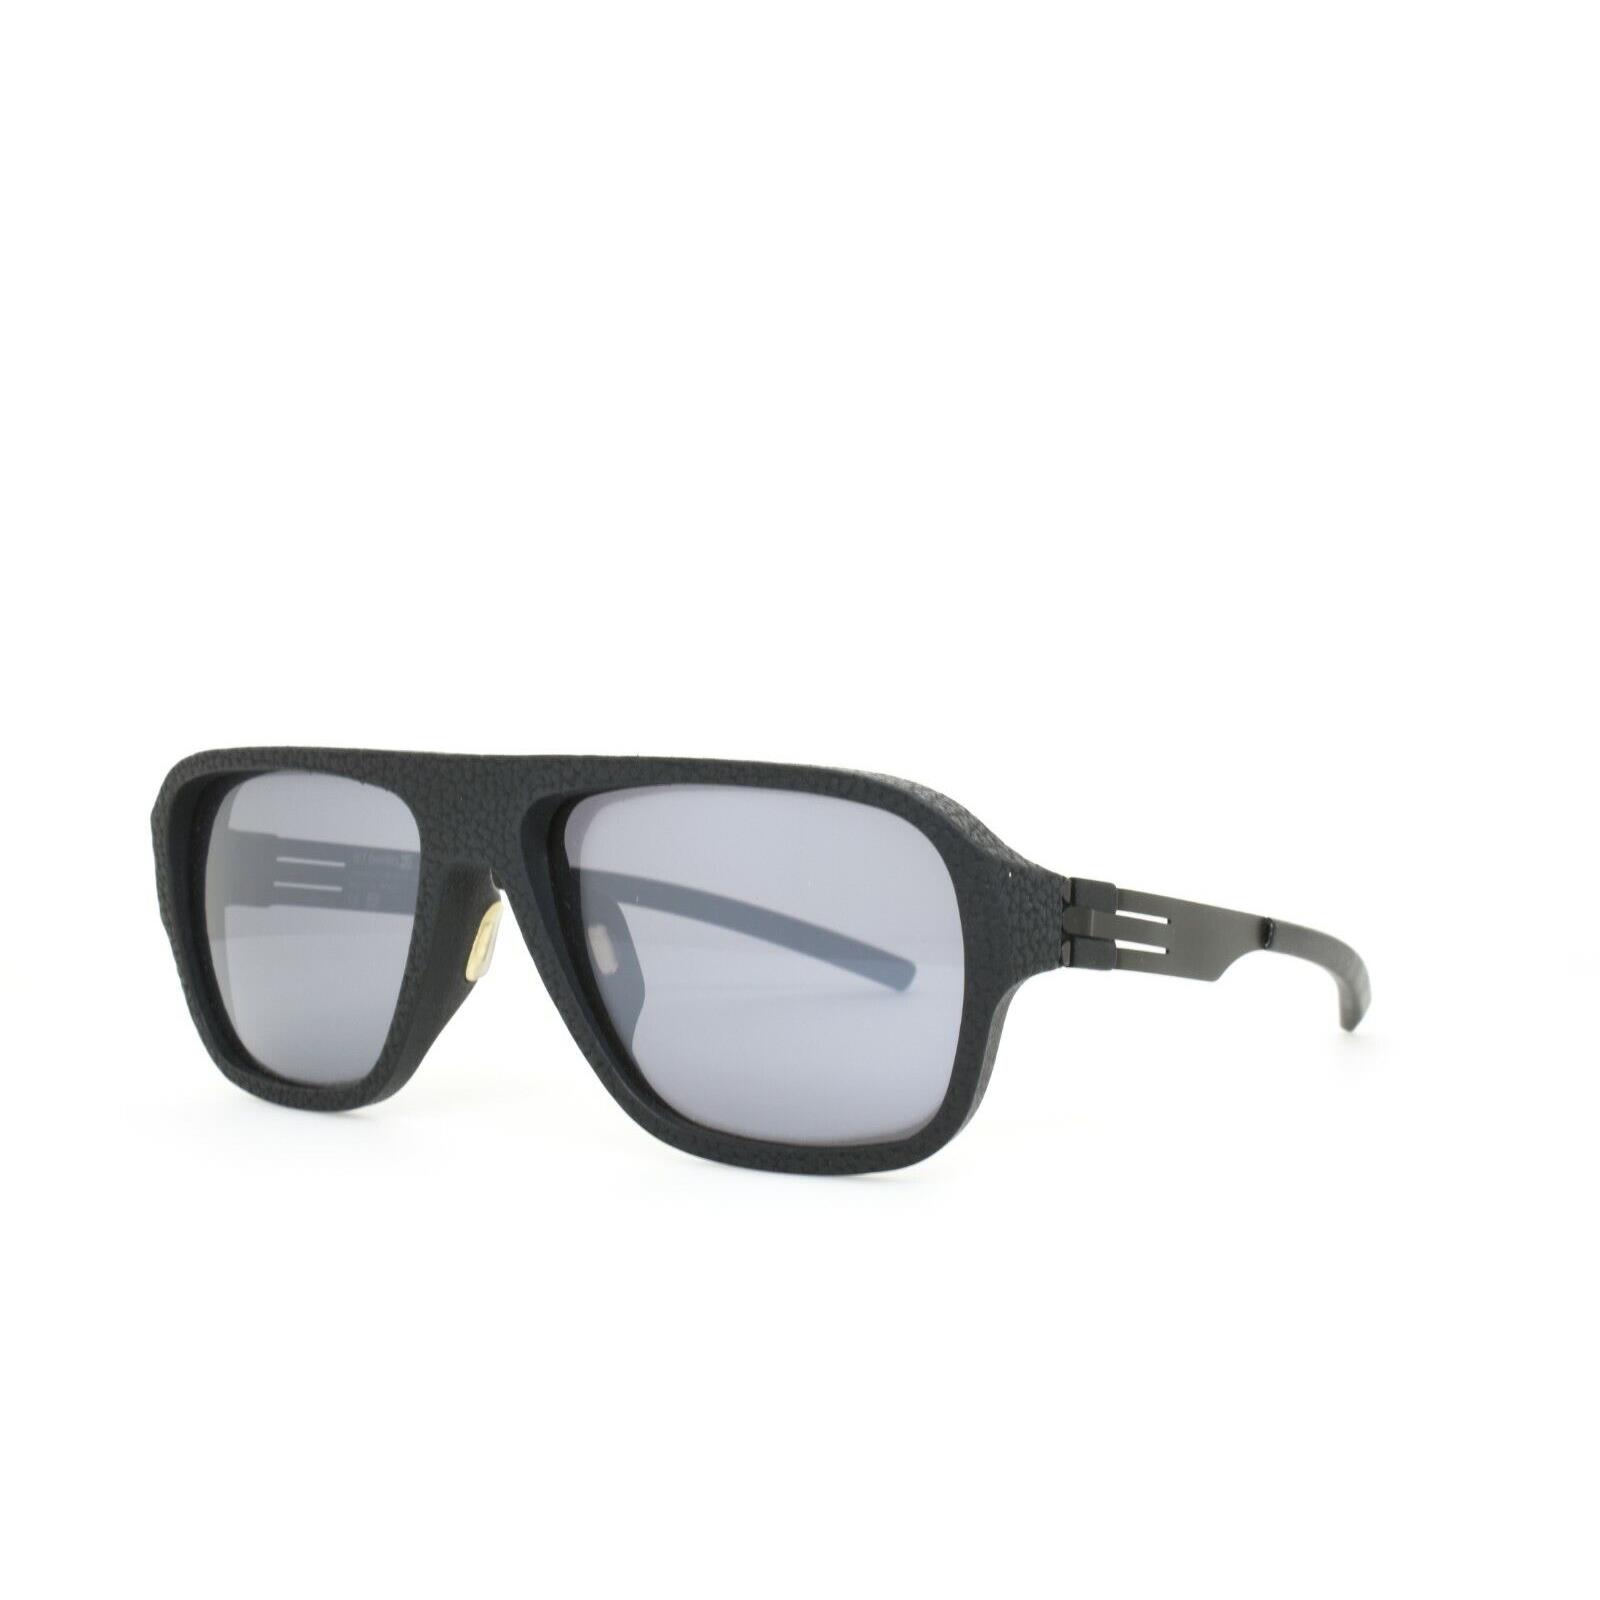 iC Berlin Sunglasses I See Black Pebble 60-17-145